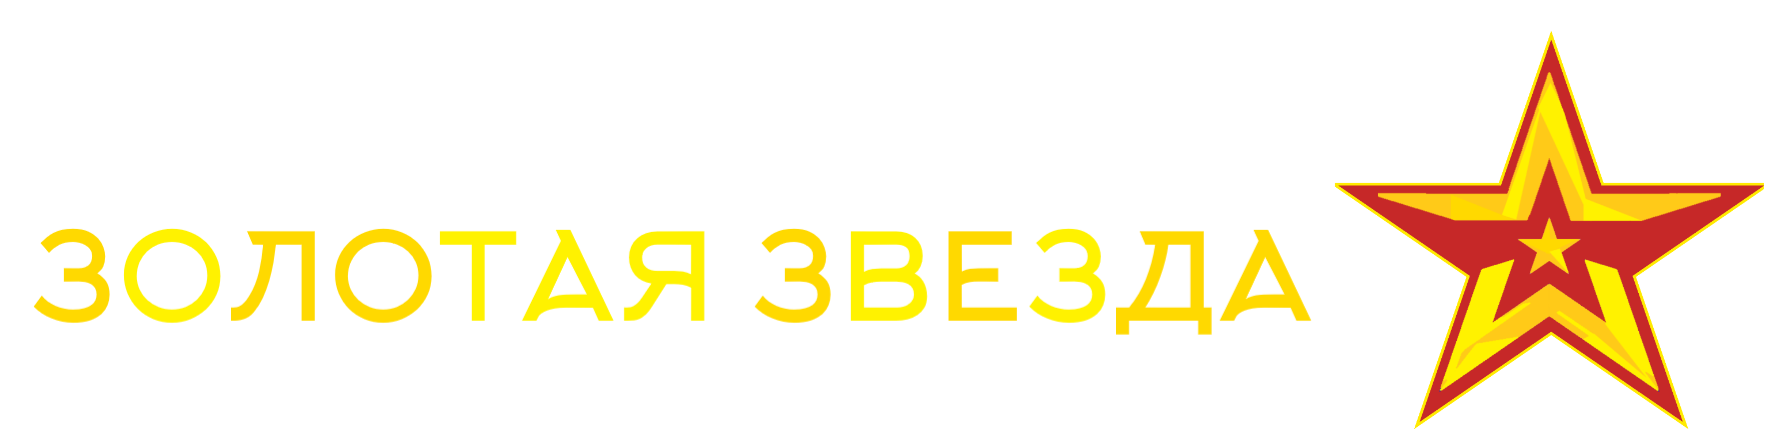 Золотые звёзды на погоны купить официальный сайт мини лого 596 купить в Москве Питере Казани майора